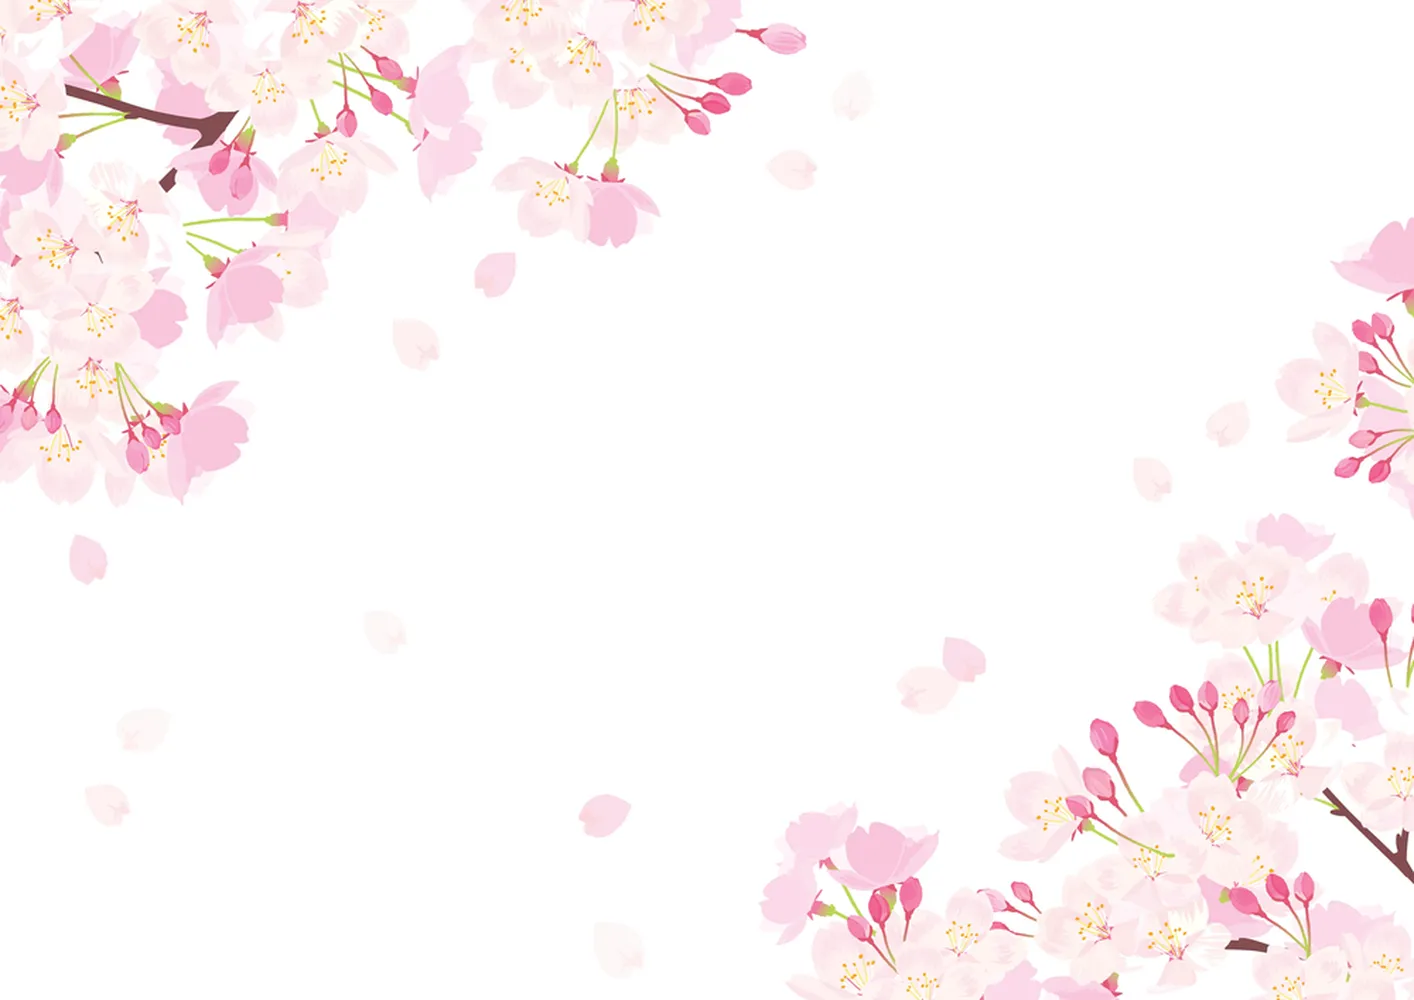 پوستر سه بعدی نقاشی طرح شکوفه گیلاس